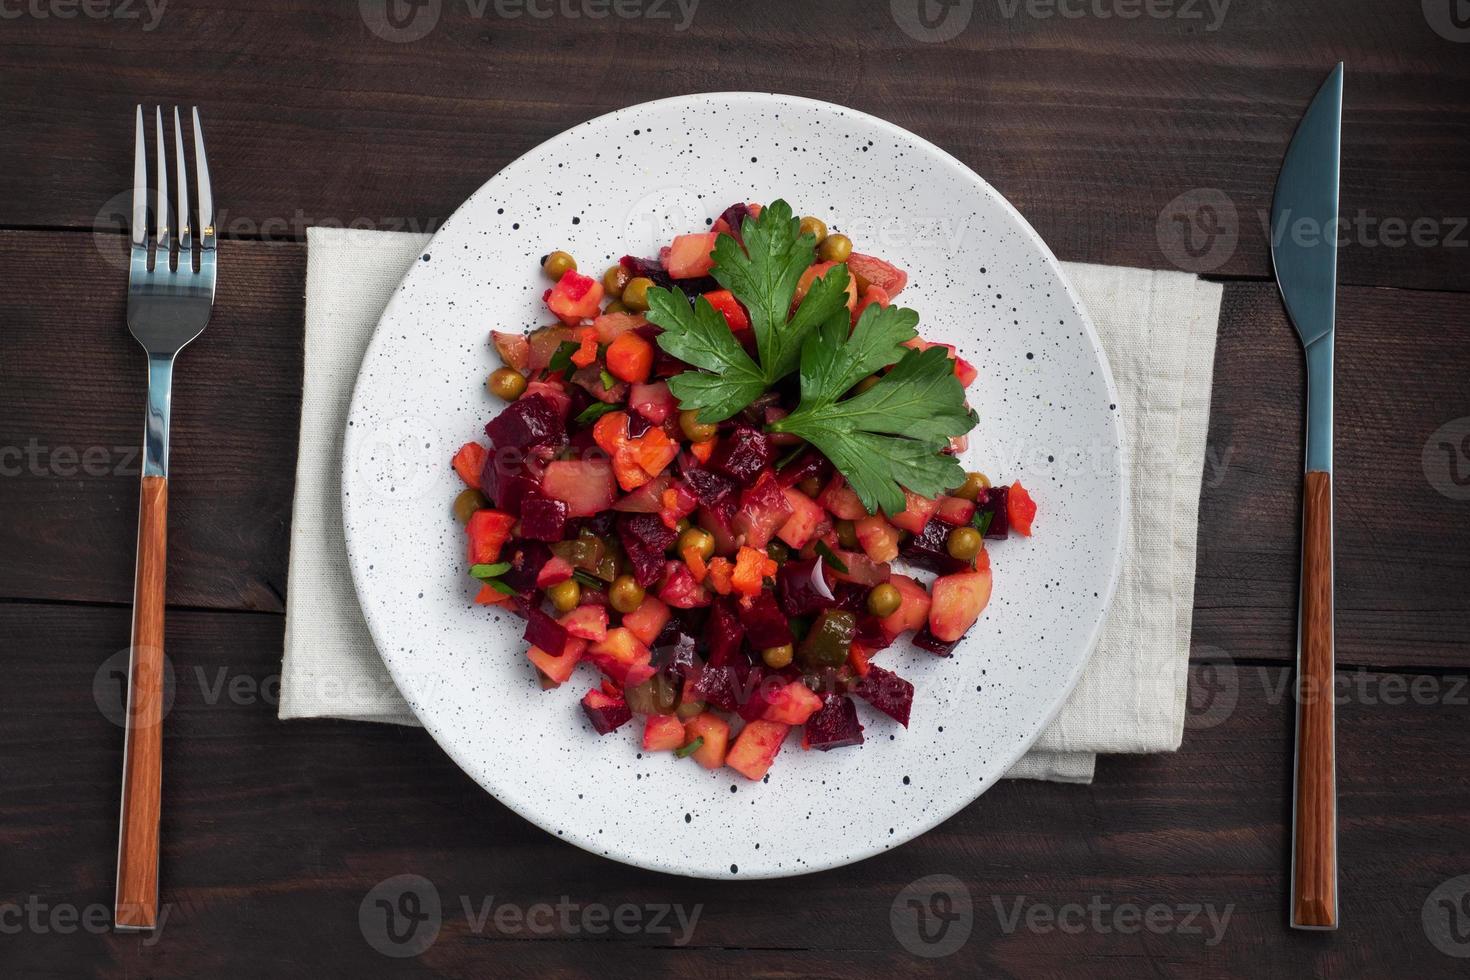 vinagreta con remolacha y verduras hervidas, ensalada casera tradicional rusa. fondo de madera oscura, copie el espacio. foto